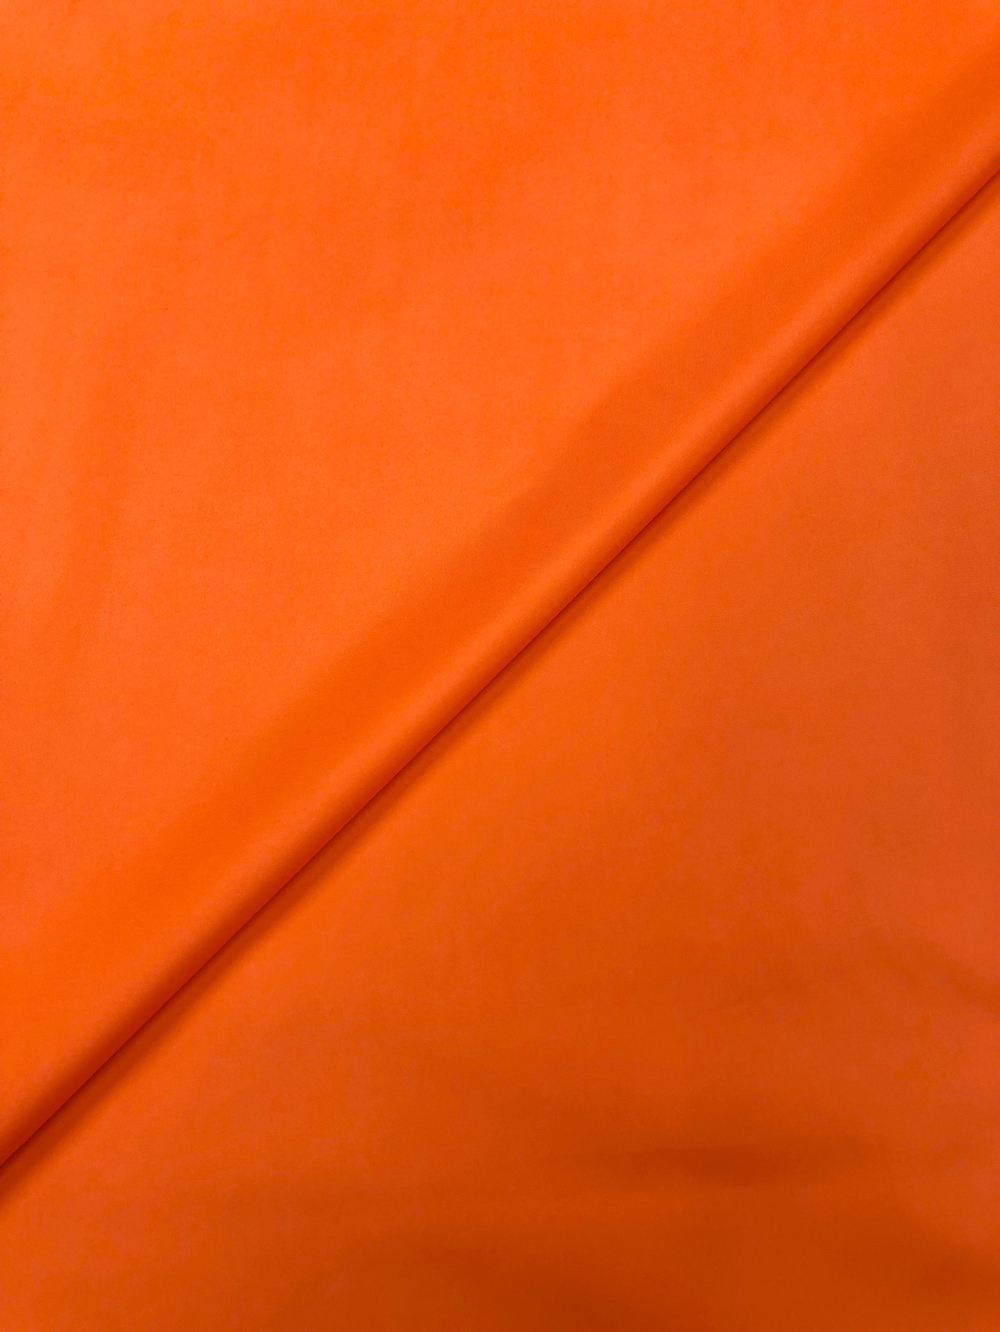 Ткань плащевая оранжевая, артикул 327811